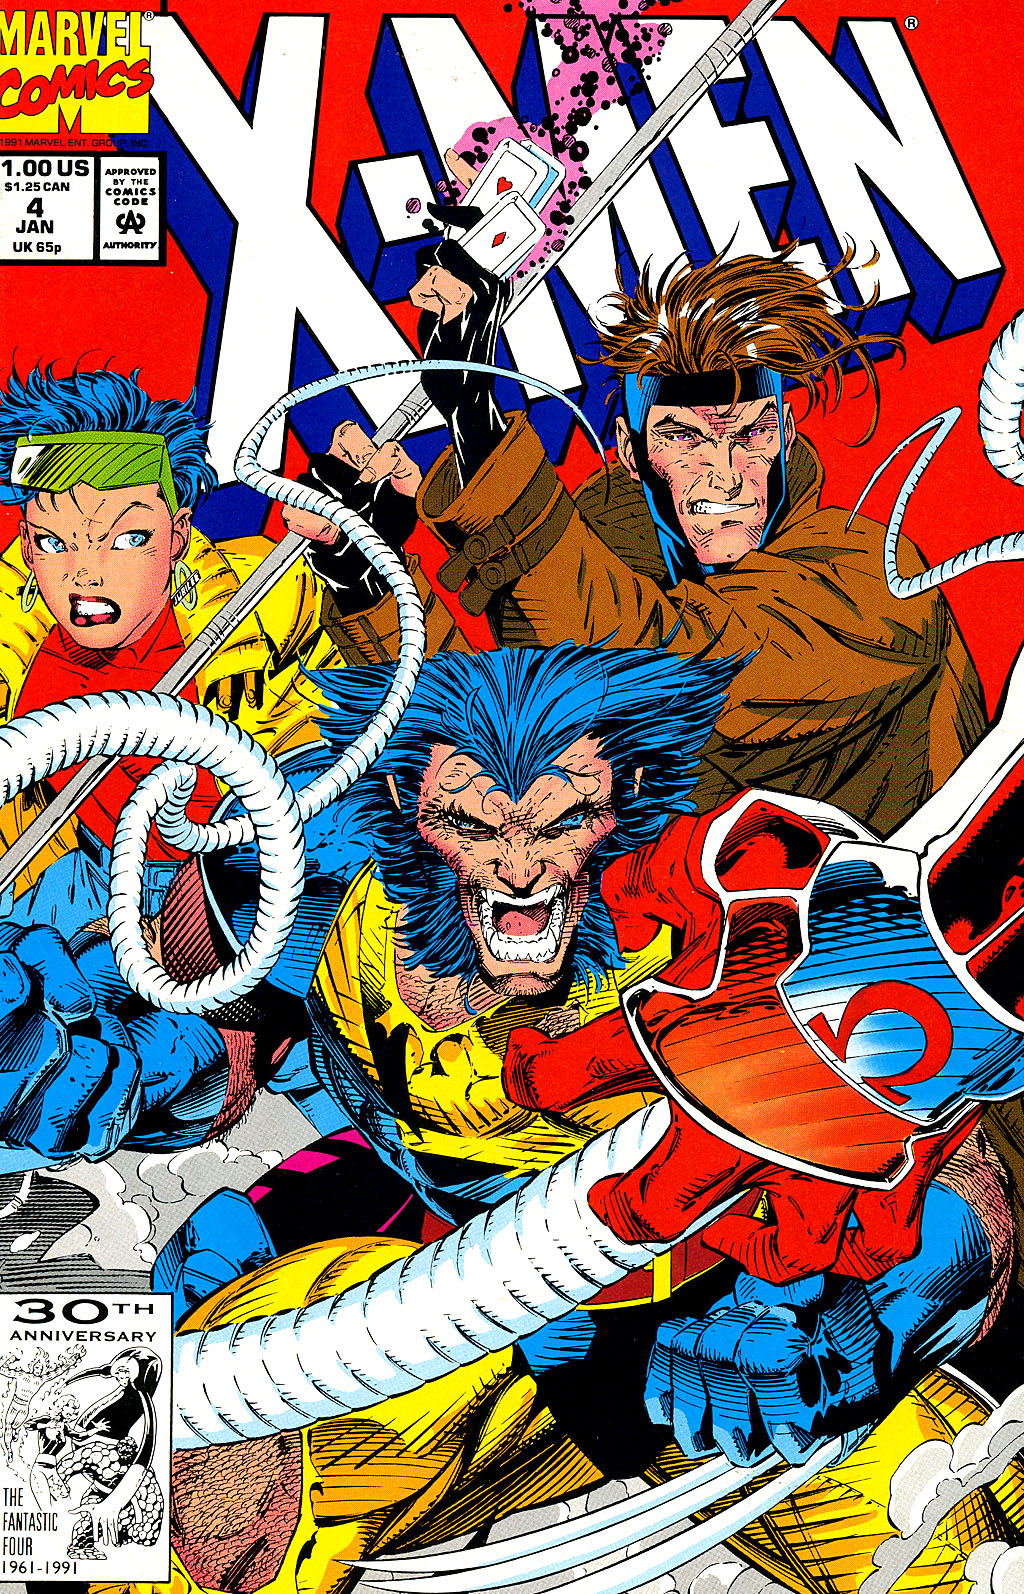 X-Men Vol 2 4 | Marvel Database | Fandom